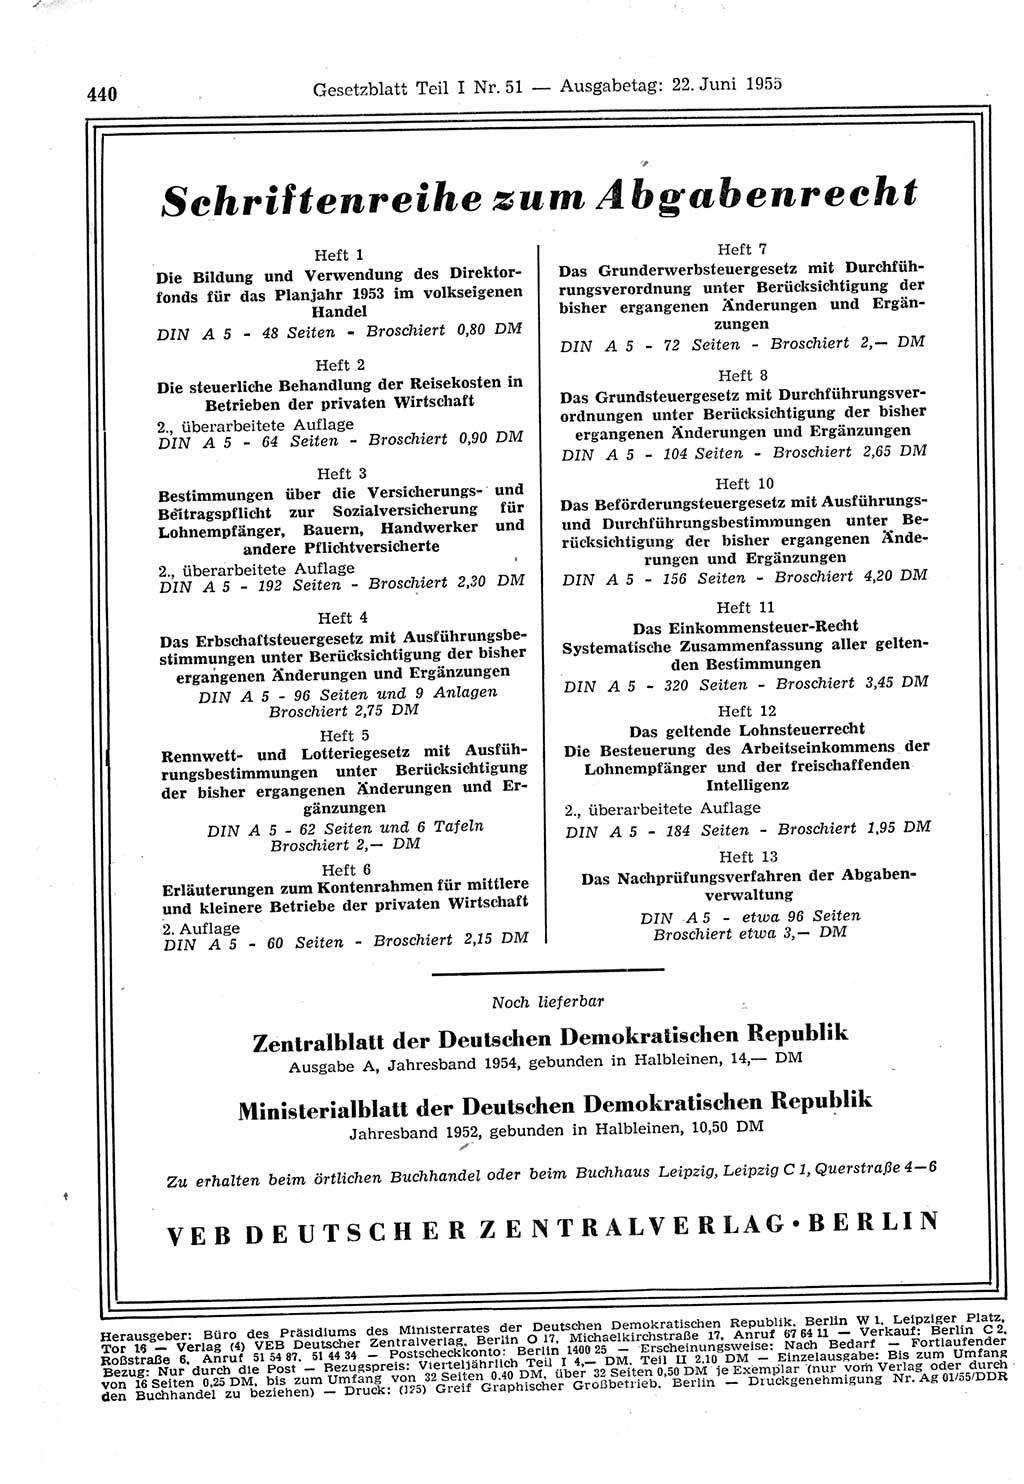 Gesetzblatt (GBl.) der Deutschen Demokratischen Republik (DDR) Teil Ⅰ 1955, Seite 440 (GBl. DDR Ⅰ 1955, S. 440)